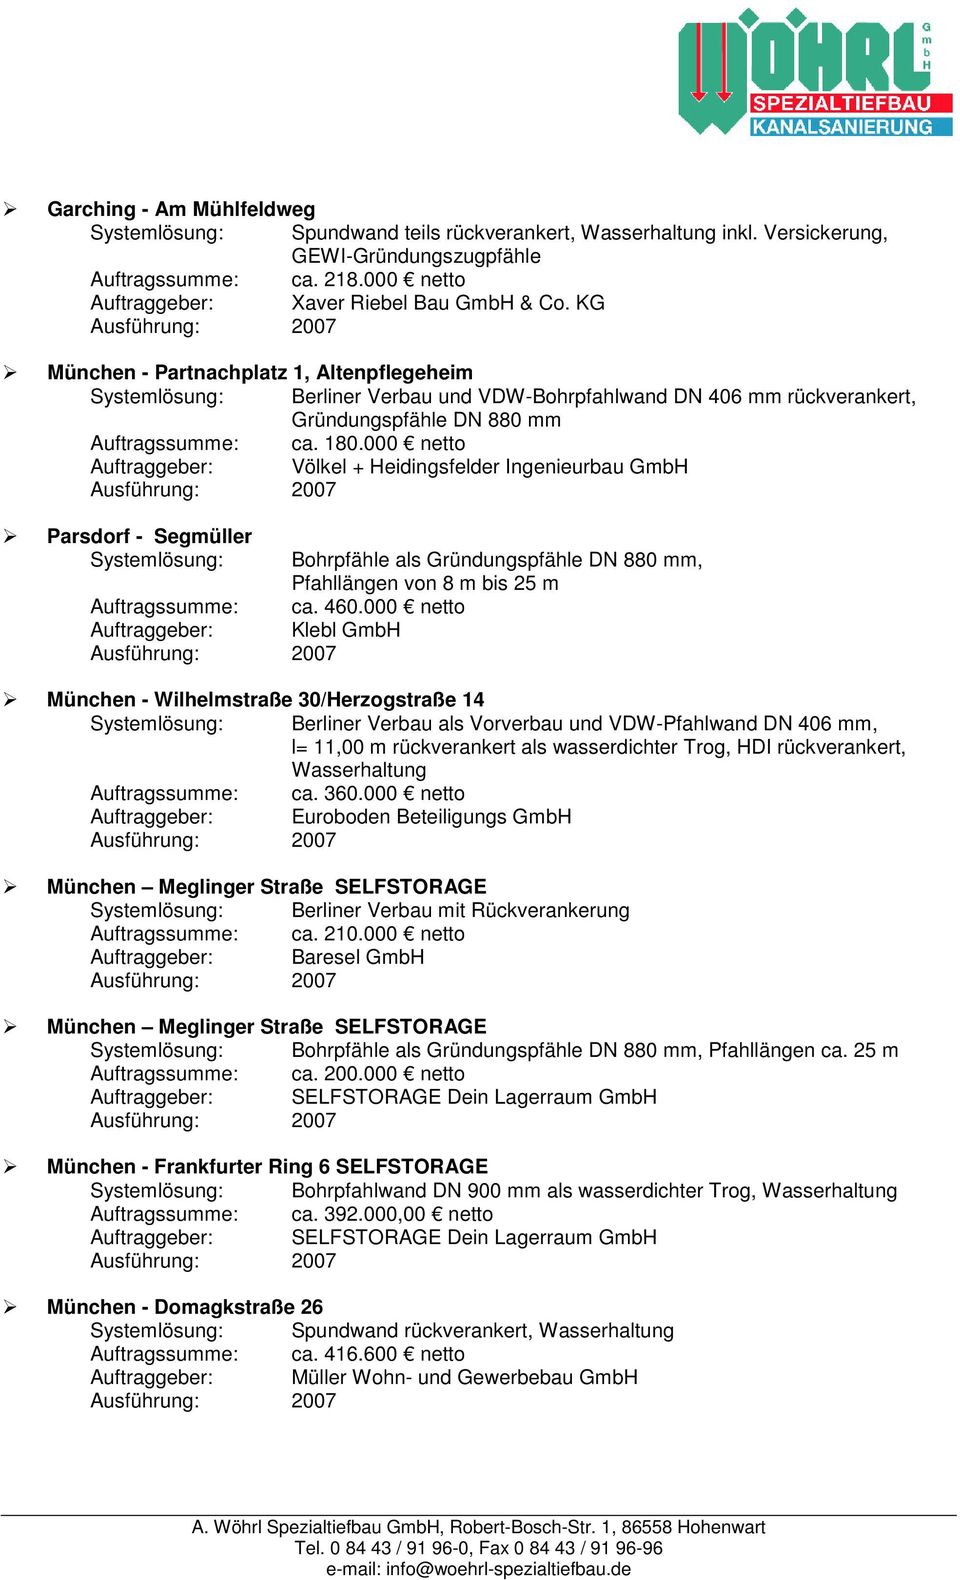 000 netto Auftraggeber: Völkel + Heidingsfelder Ingenieurbau GmbH Parsdorf - Segmüller Systemlösung: Bohrpfähle als Gründungspfähle DN 880 mm, Pfahllängen von 8 m bis 25 m Auftragssumme: ca. 460.